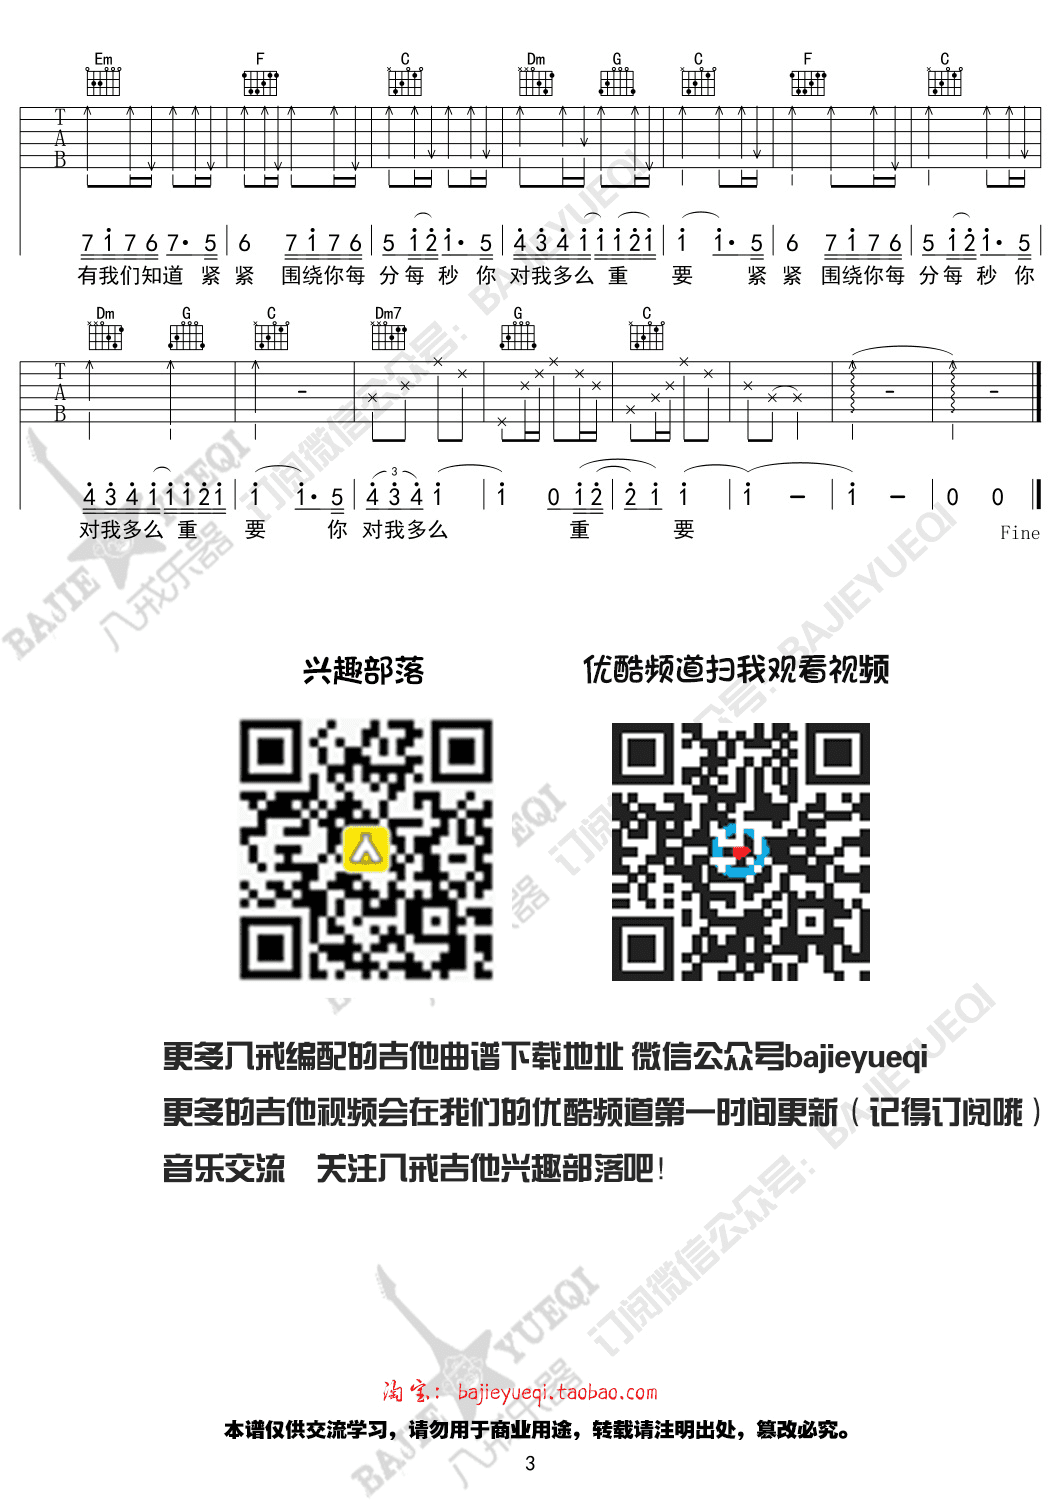 ‎Apple Music 上佟铁鑫 & 杨洋的专辑《父子 - Single》